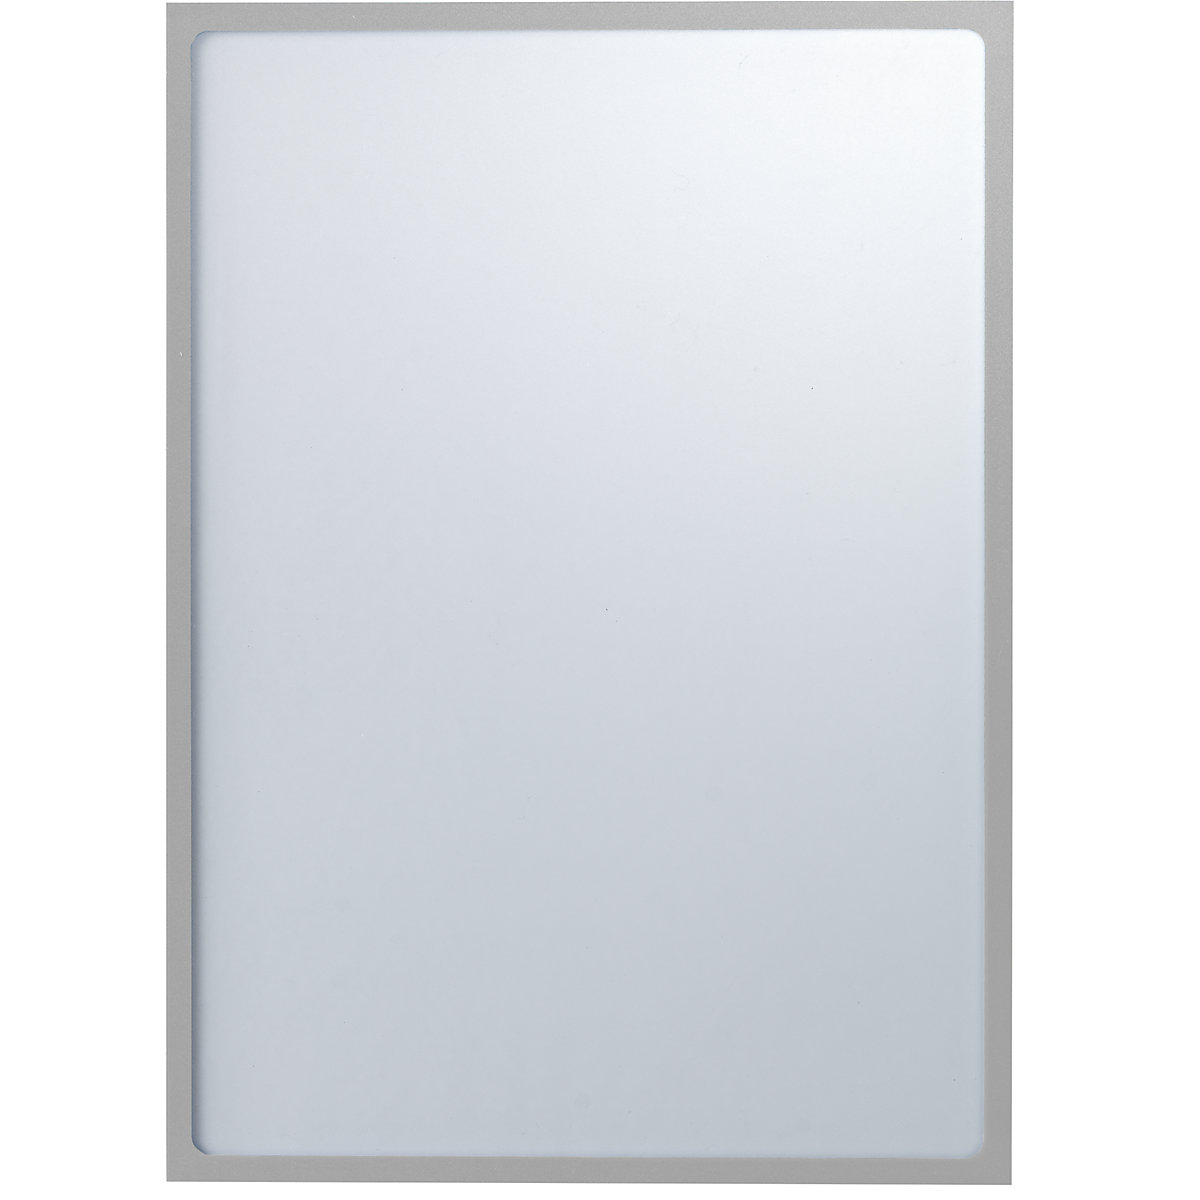 EUROKRAFTbasic – Pochette info magnétique, format A3, l x h 312 x 435 mm, cadre argenté, lot de 30